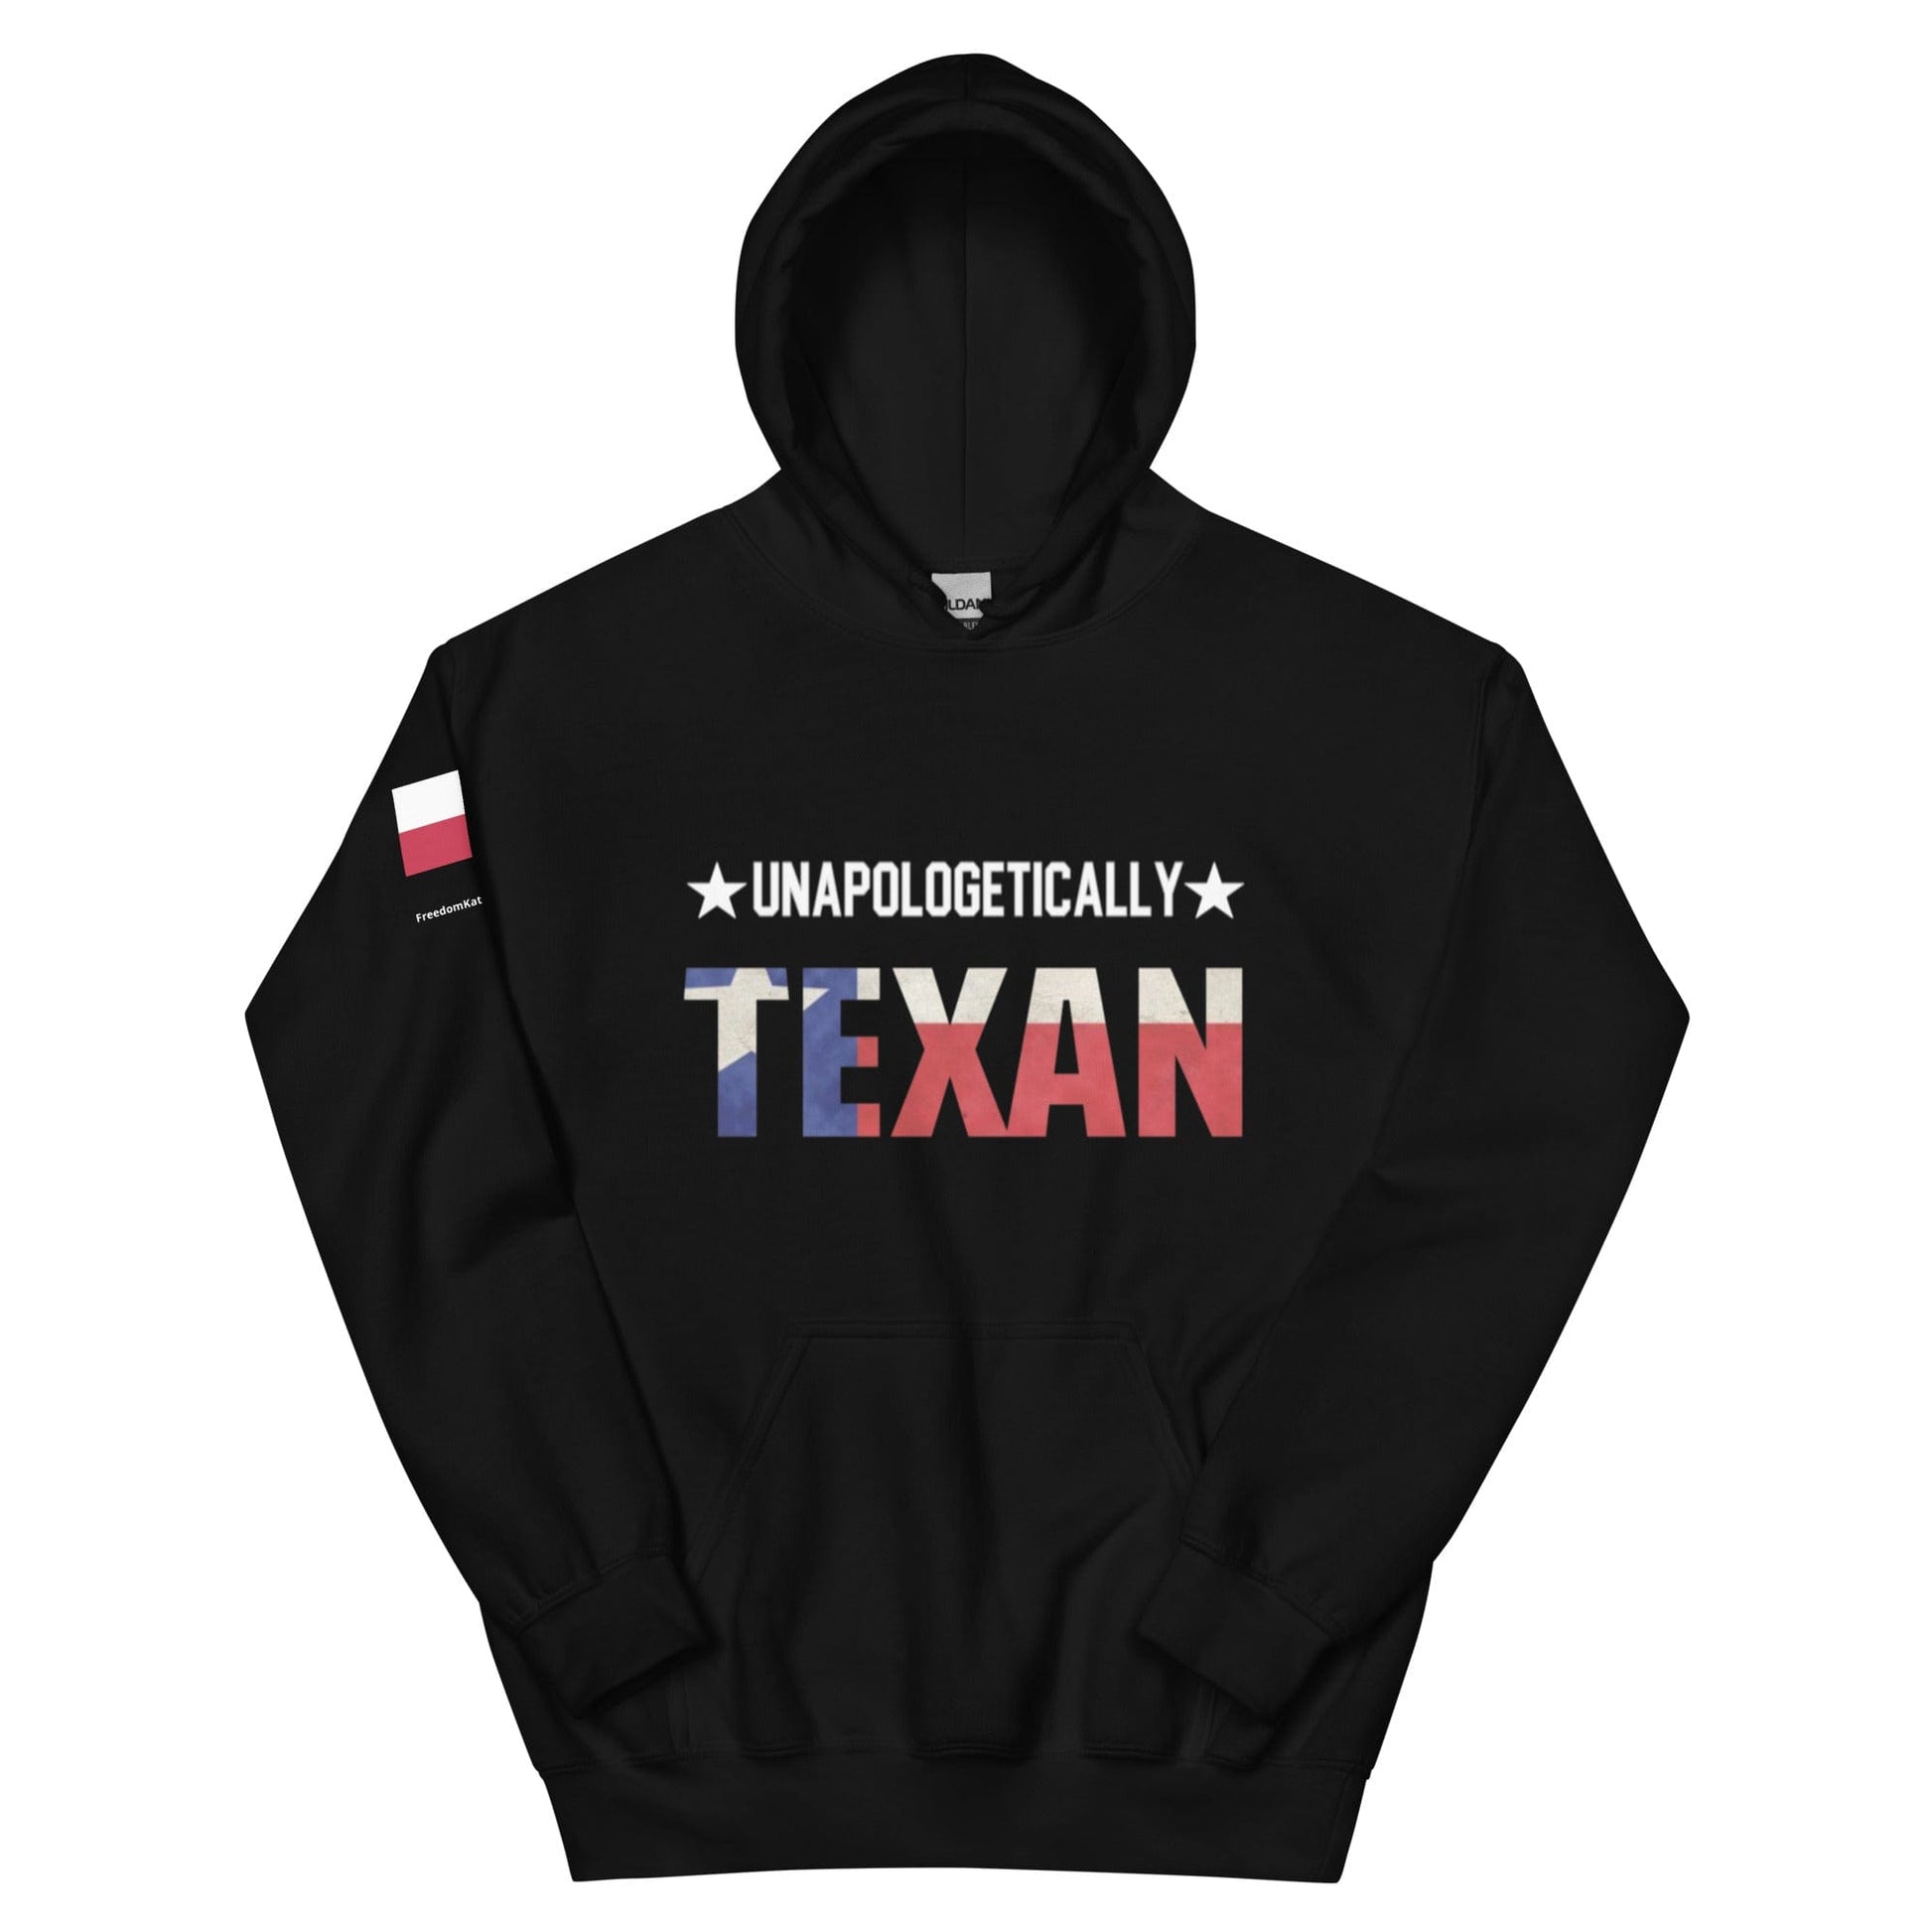 FreedomKat Designs Hoodie Black / S Unapologetically Texan Hoodie